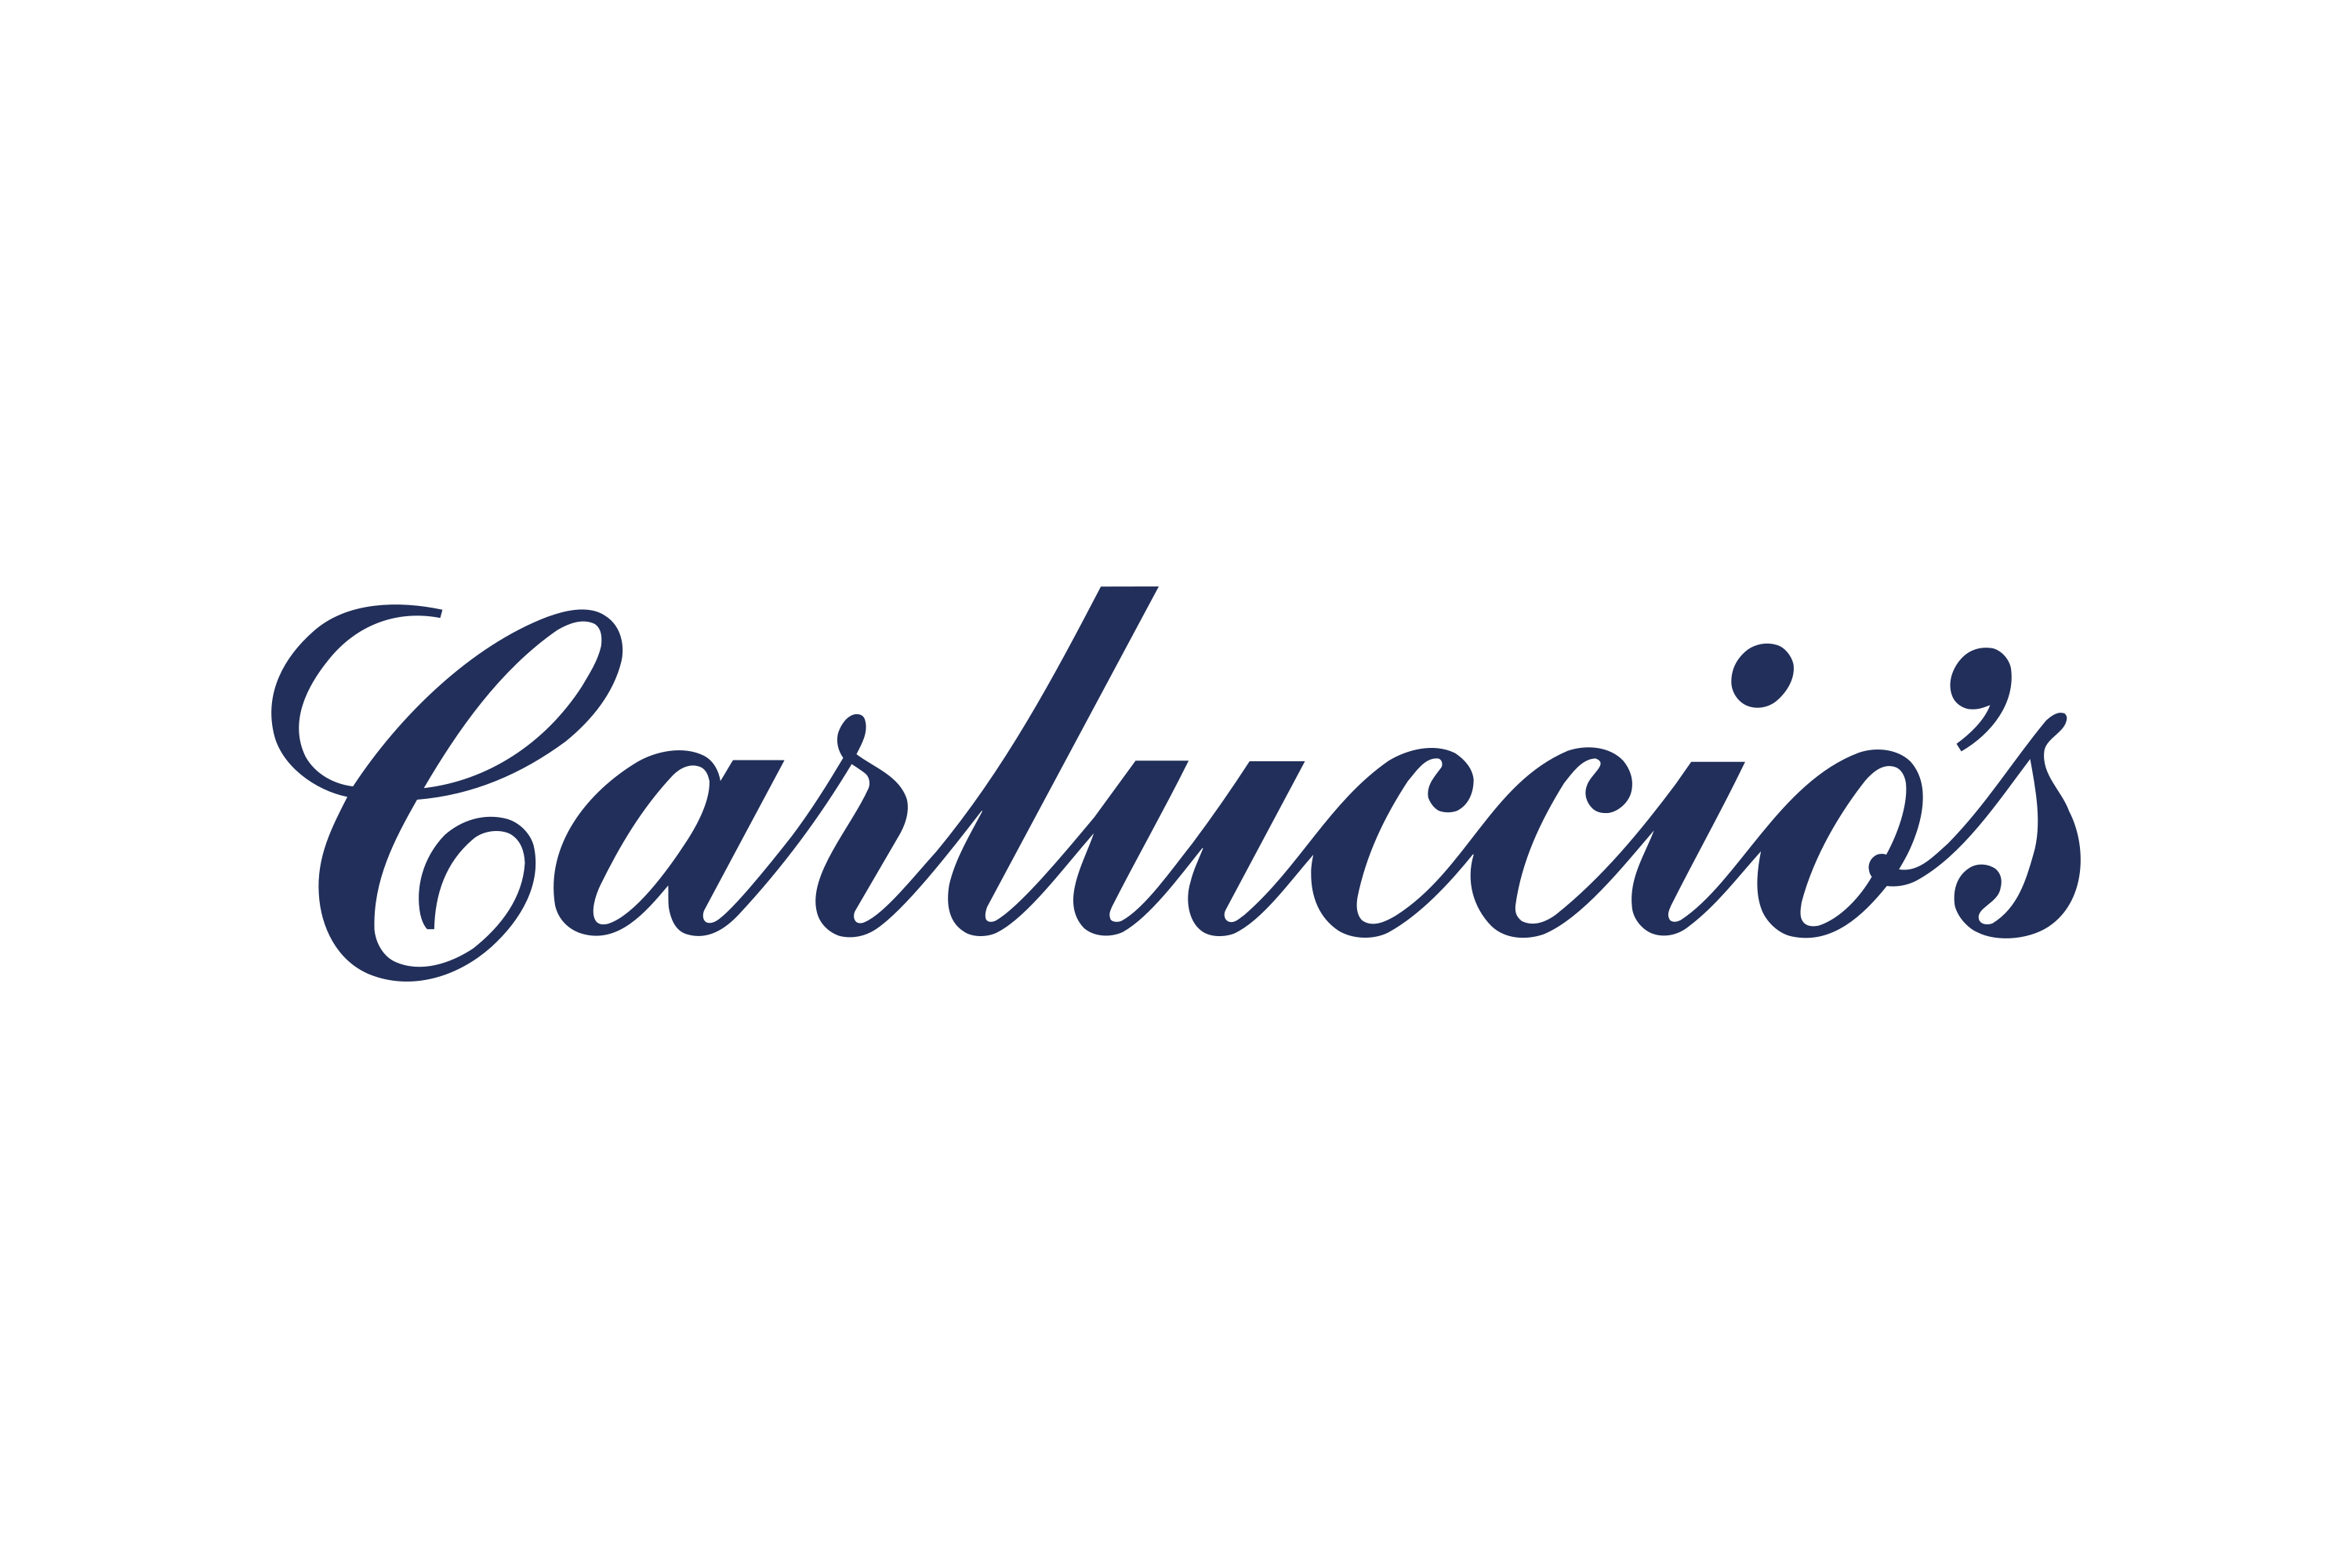 Carluccio’s Logo